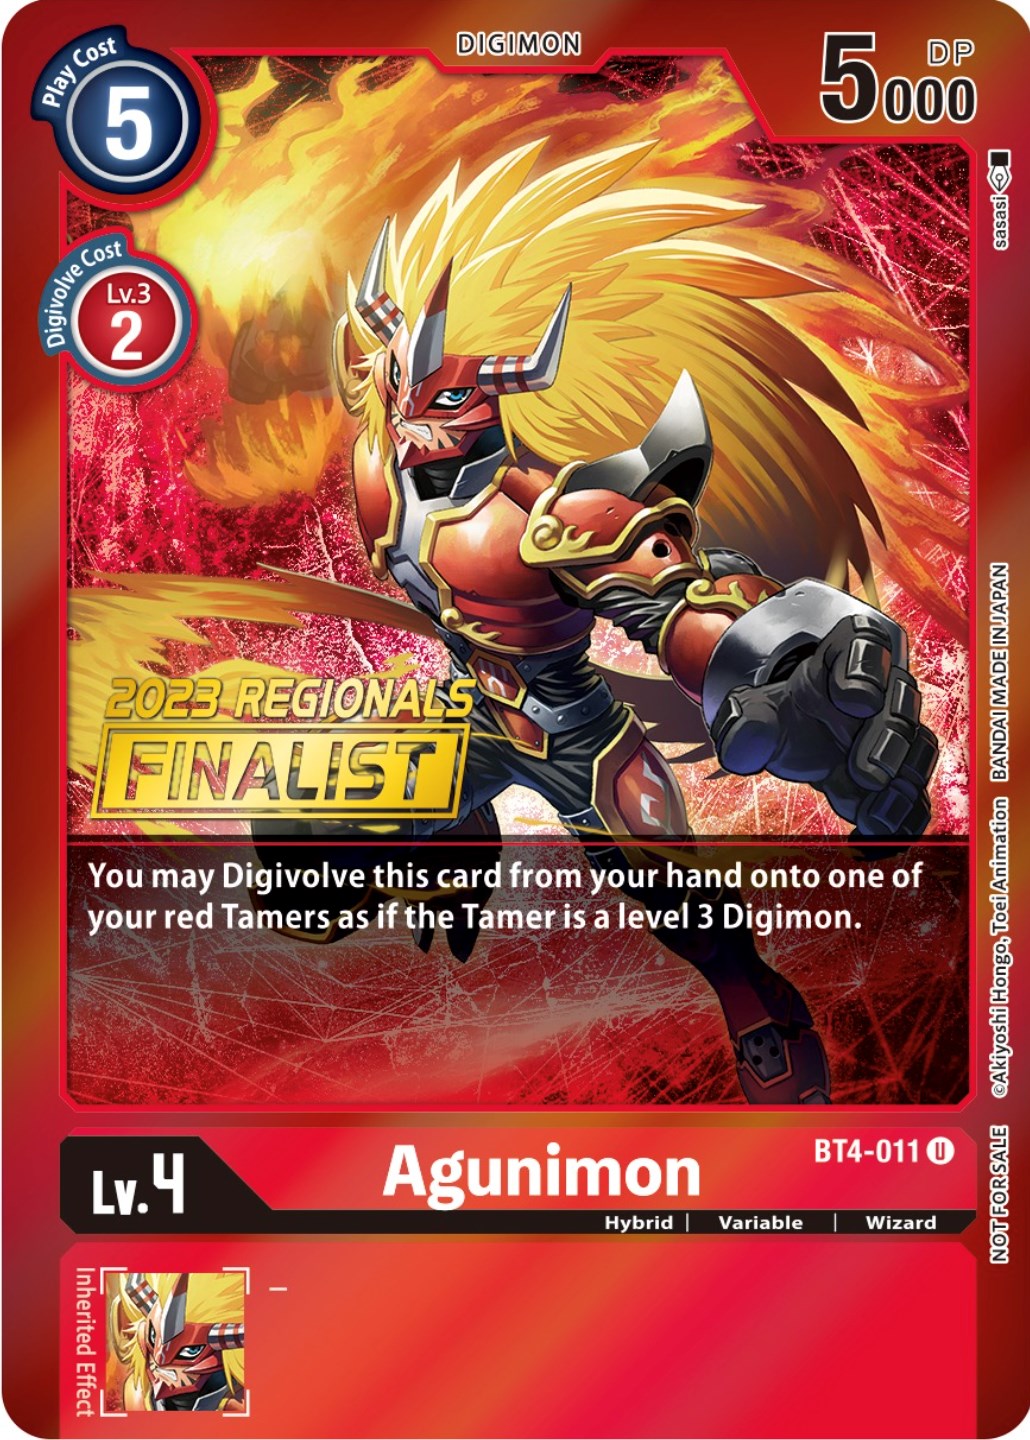 Agunimon [BT4-011] (2023 Regionals Finalist) [Great Legend Promos] | Anubis Games and Hobby